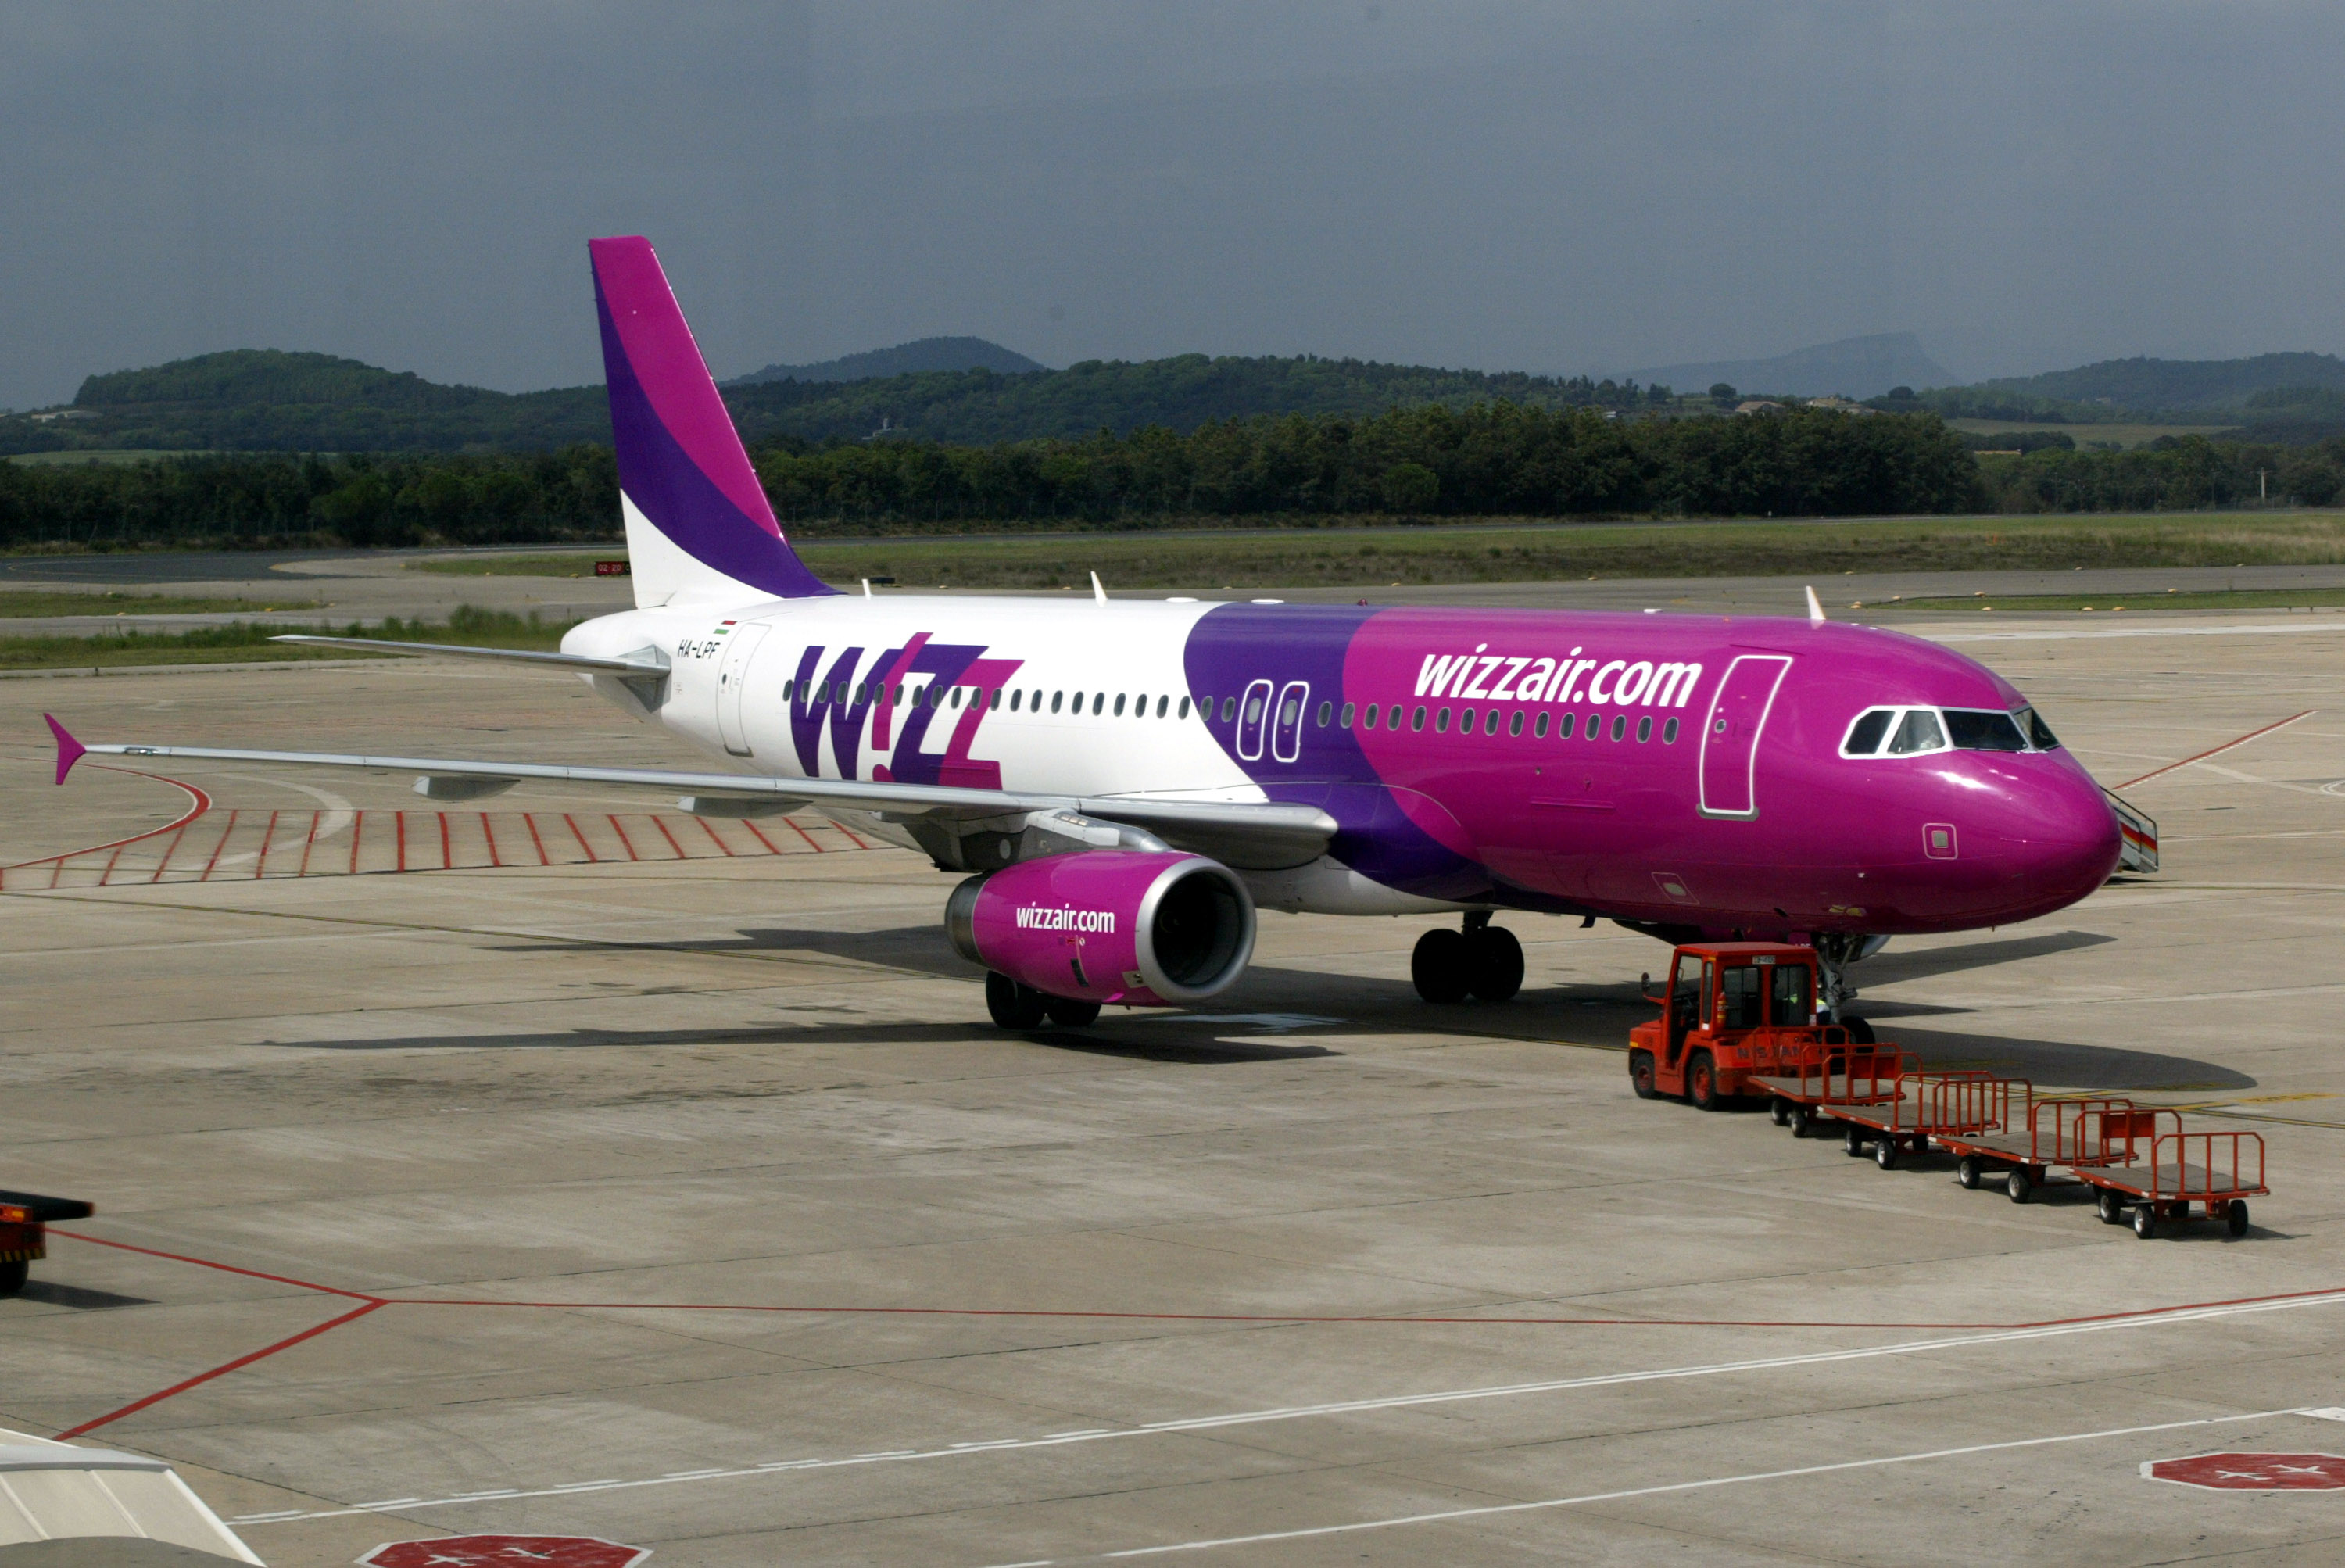 Elképesztő videóval jelentkezett a születésapos Wizz Air: így még nem látt  az utaskísérőket - Blikk